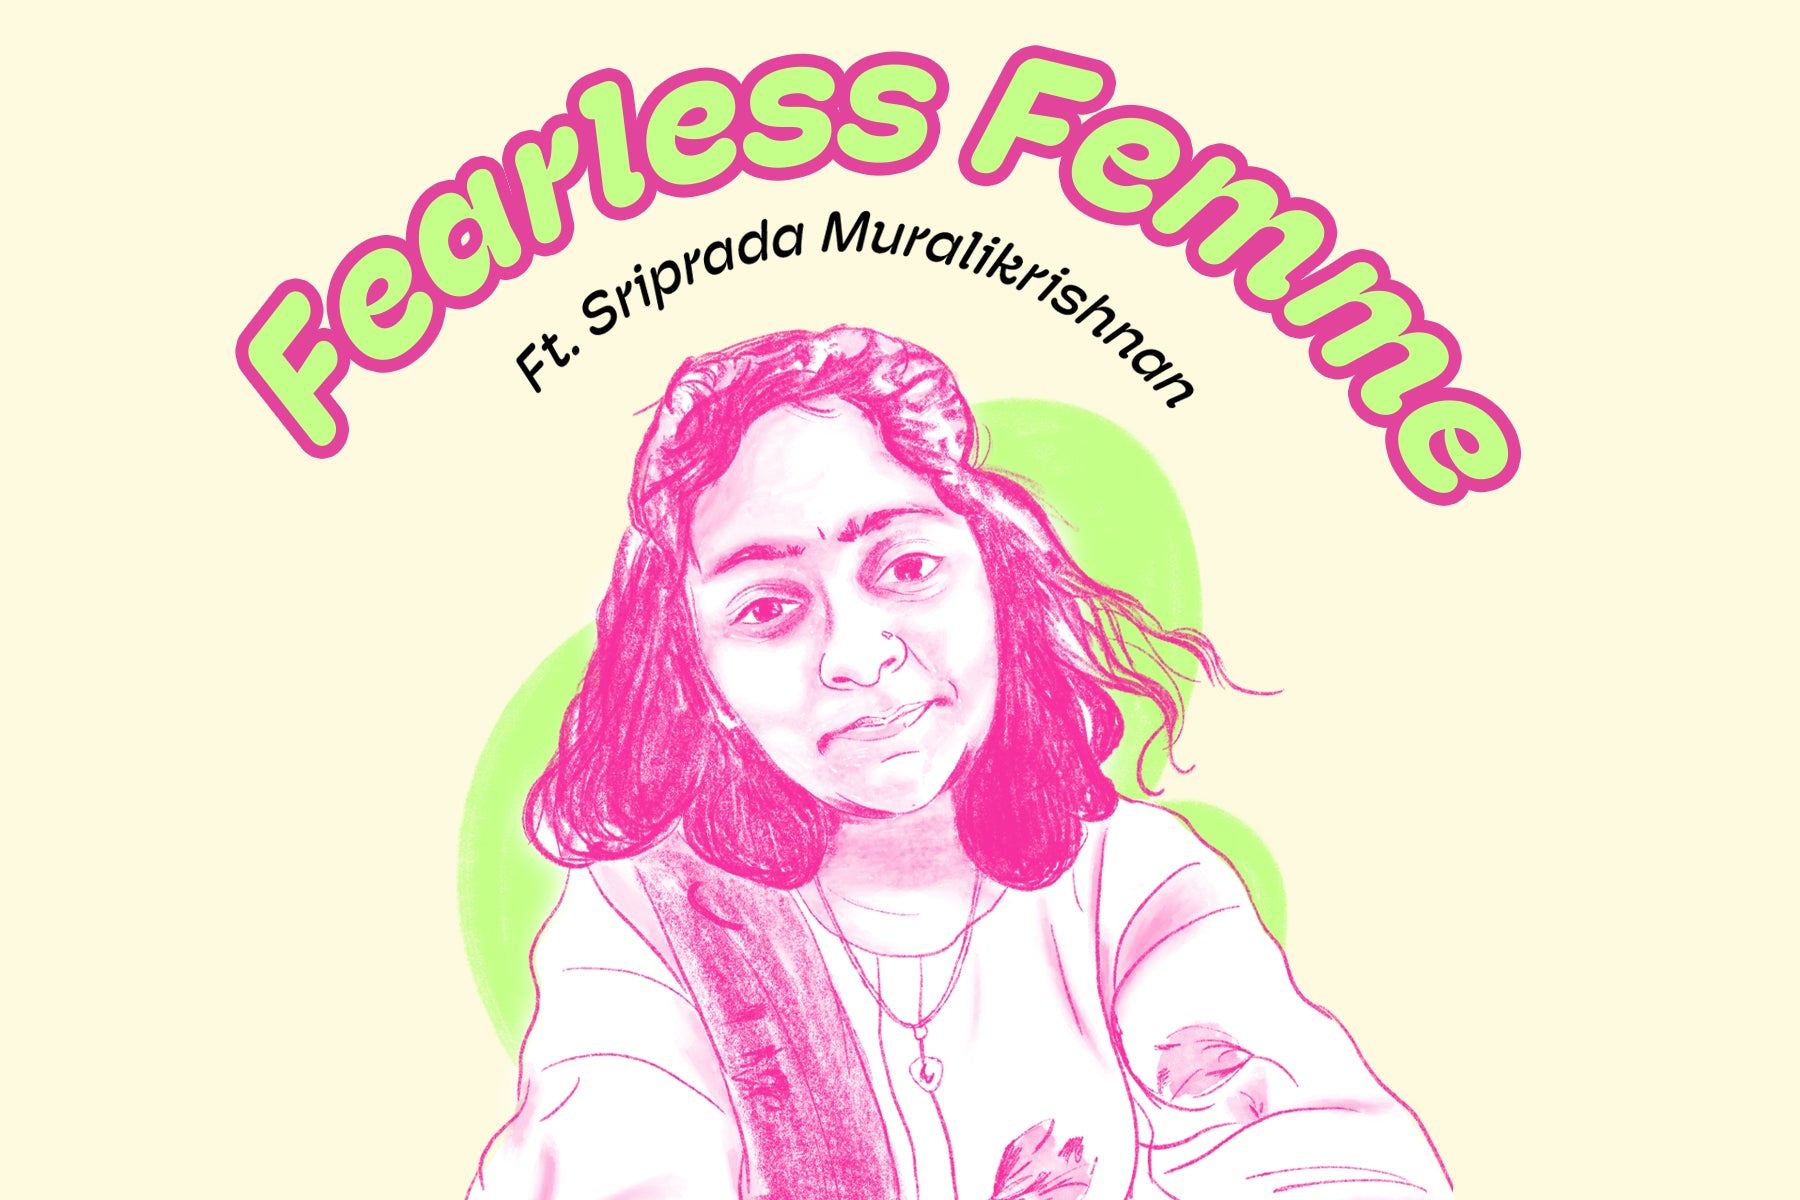 Fearless Femme Ft. Sriprada Muralikrishnan